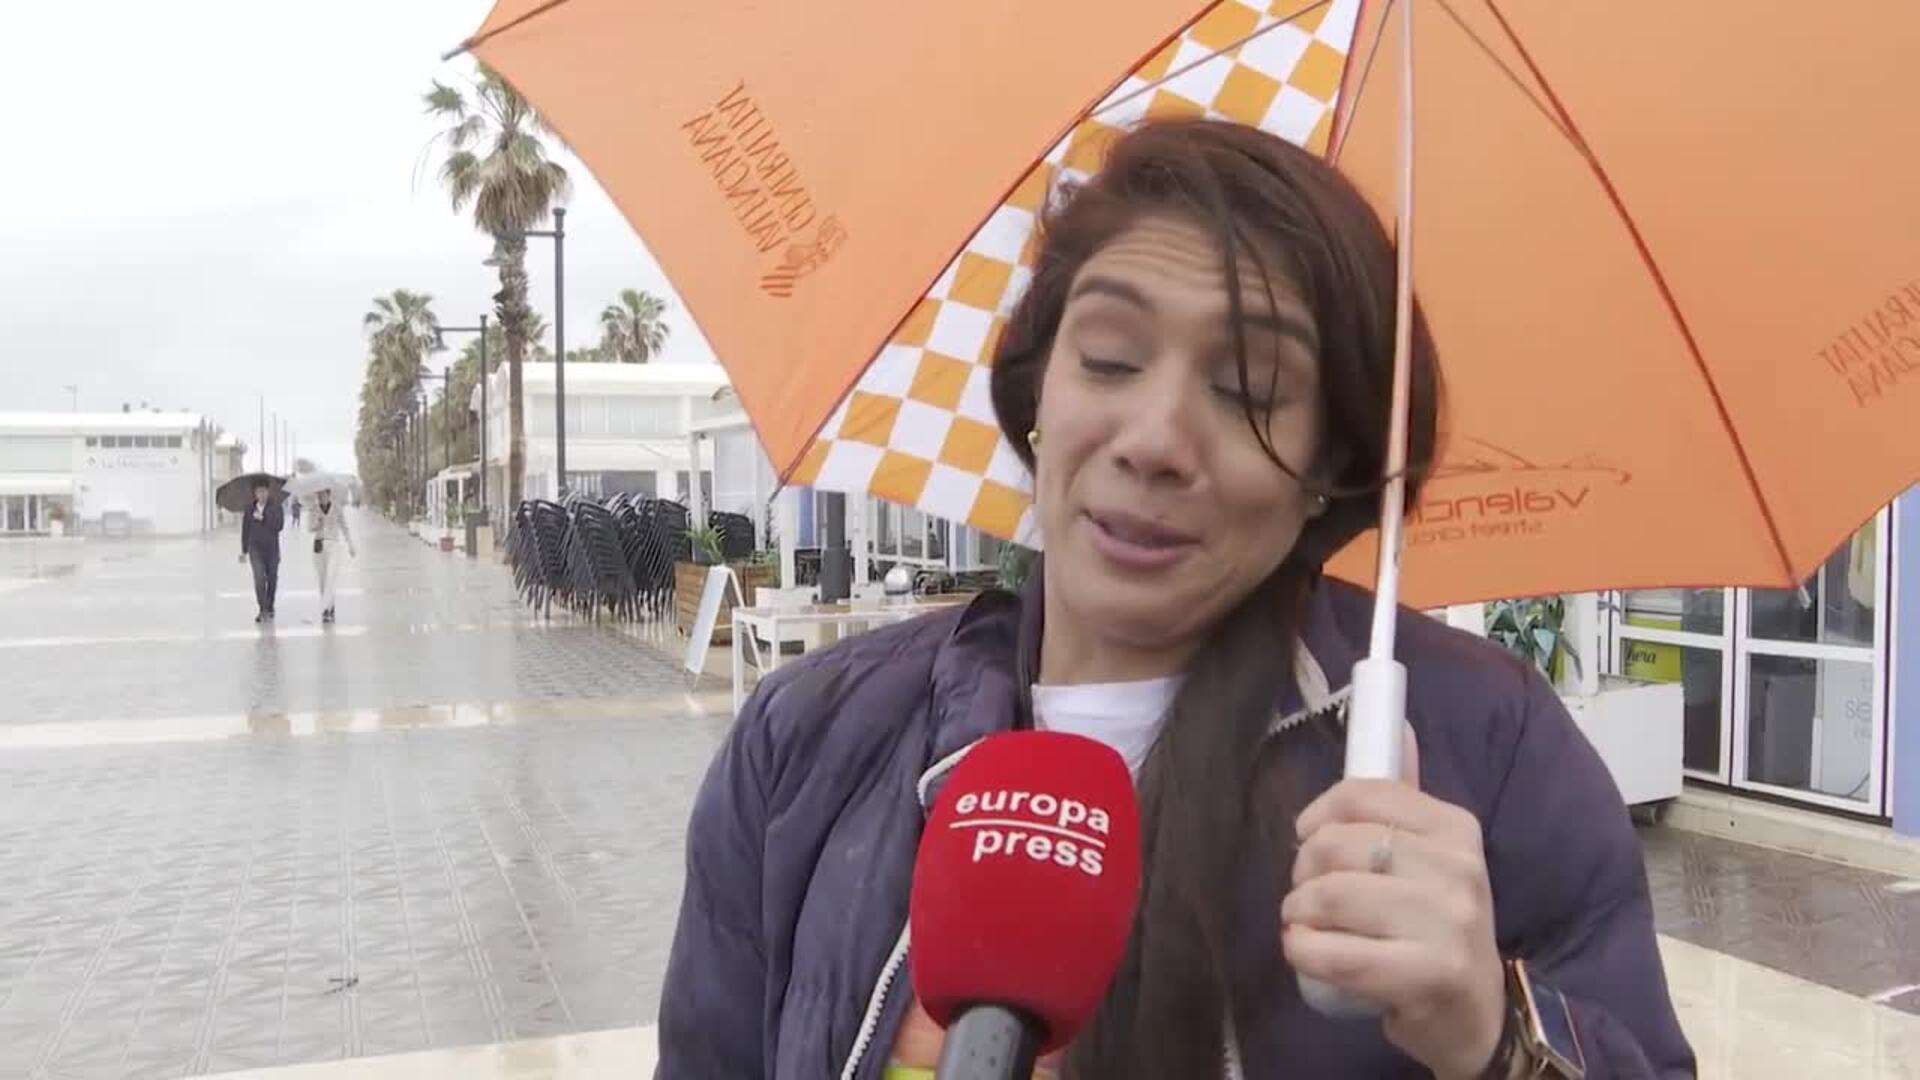 Turistas mantienen sus reservas pese a las lluvias: "La gente está animada"